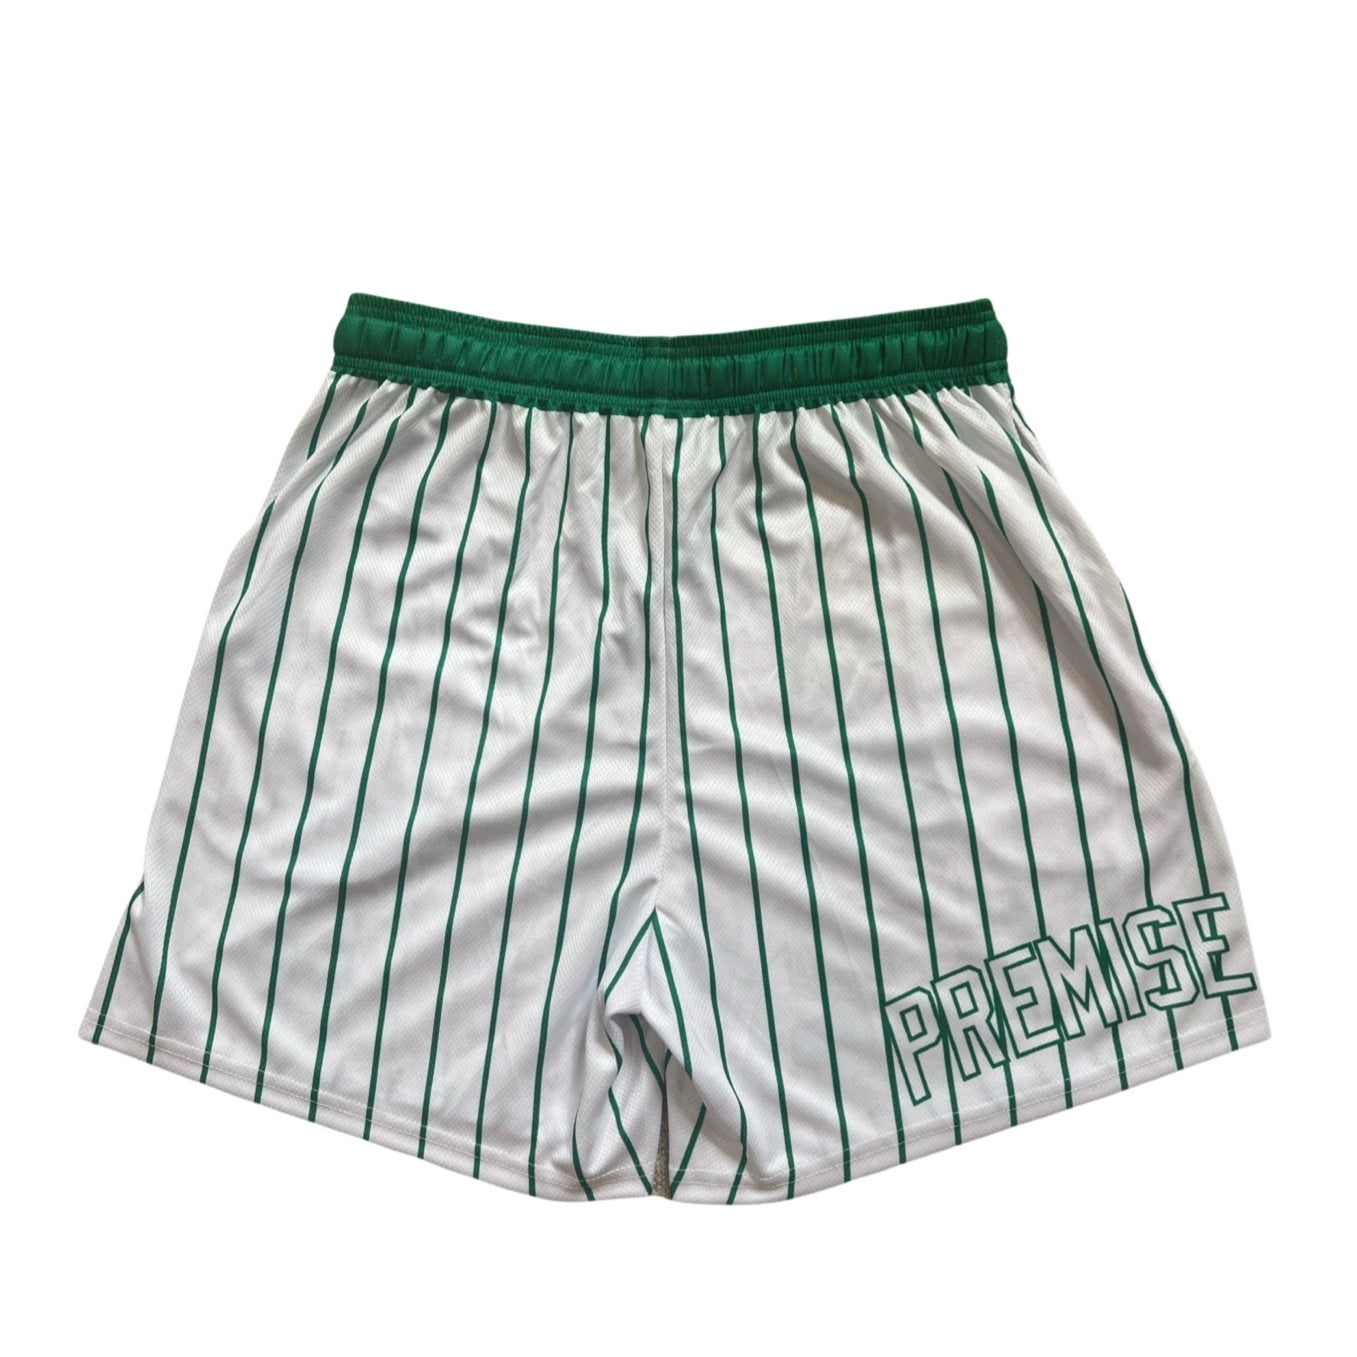 BOS Celtics (Premise) Mesh Shorts